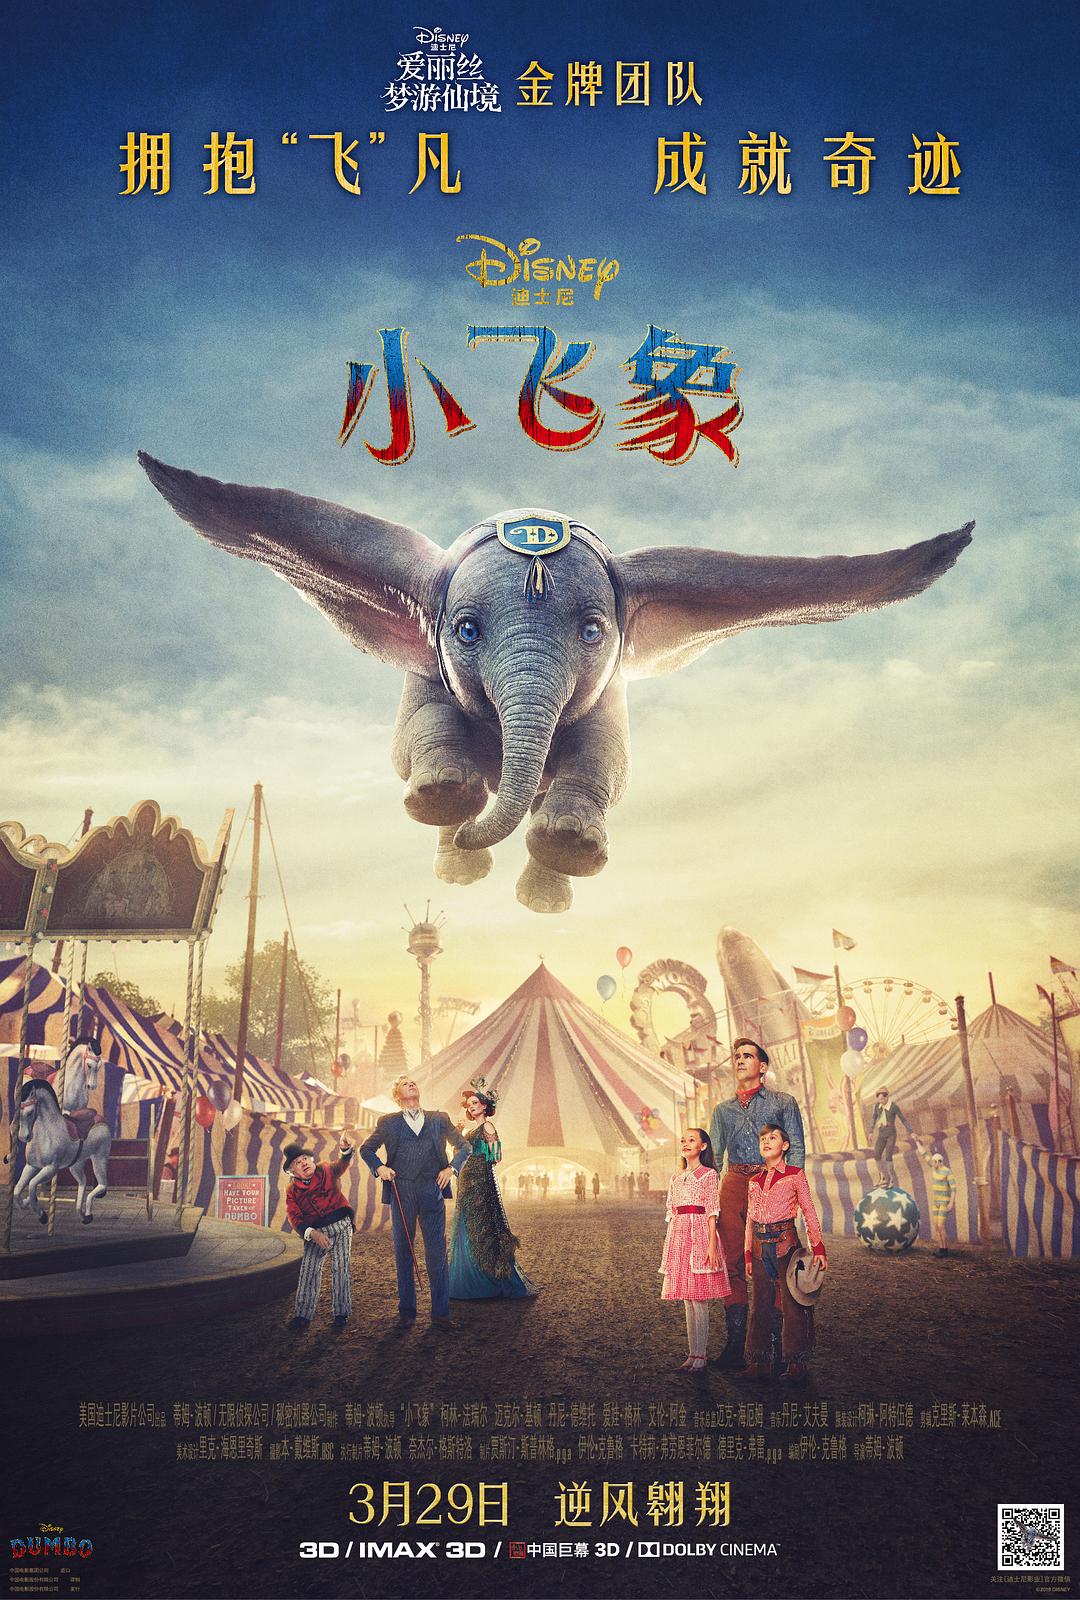 小飞象/小飞象真人版 Dumbo.2019.1080p.BluRay.x264.TrueHD.7.1.Atmos-FGT 11.19GB